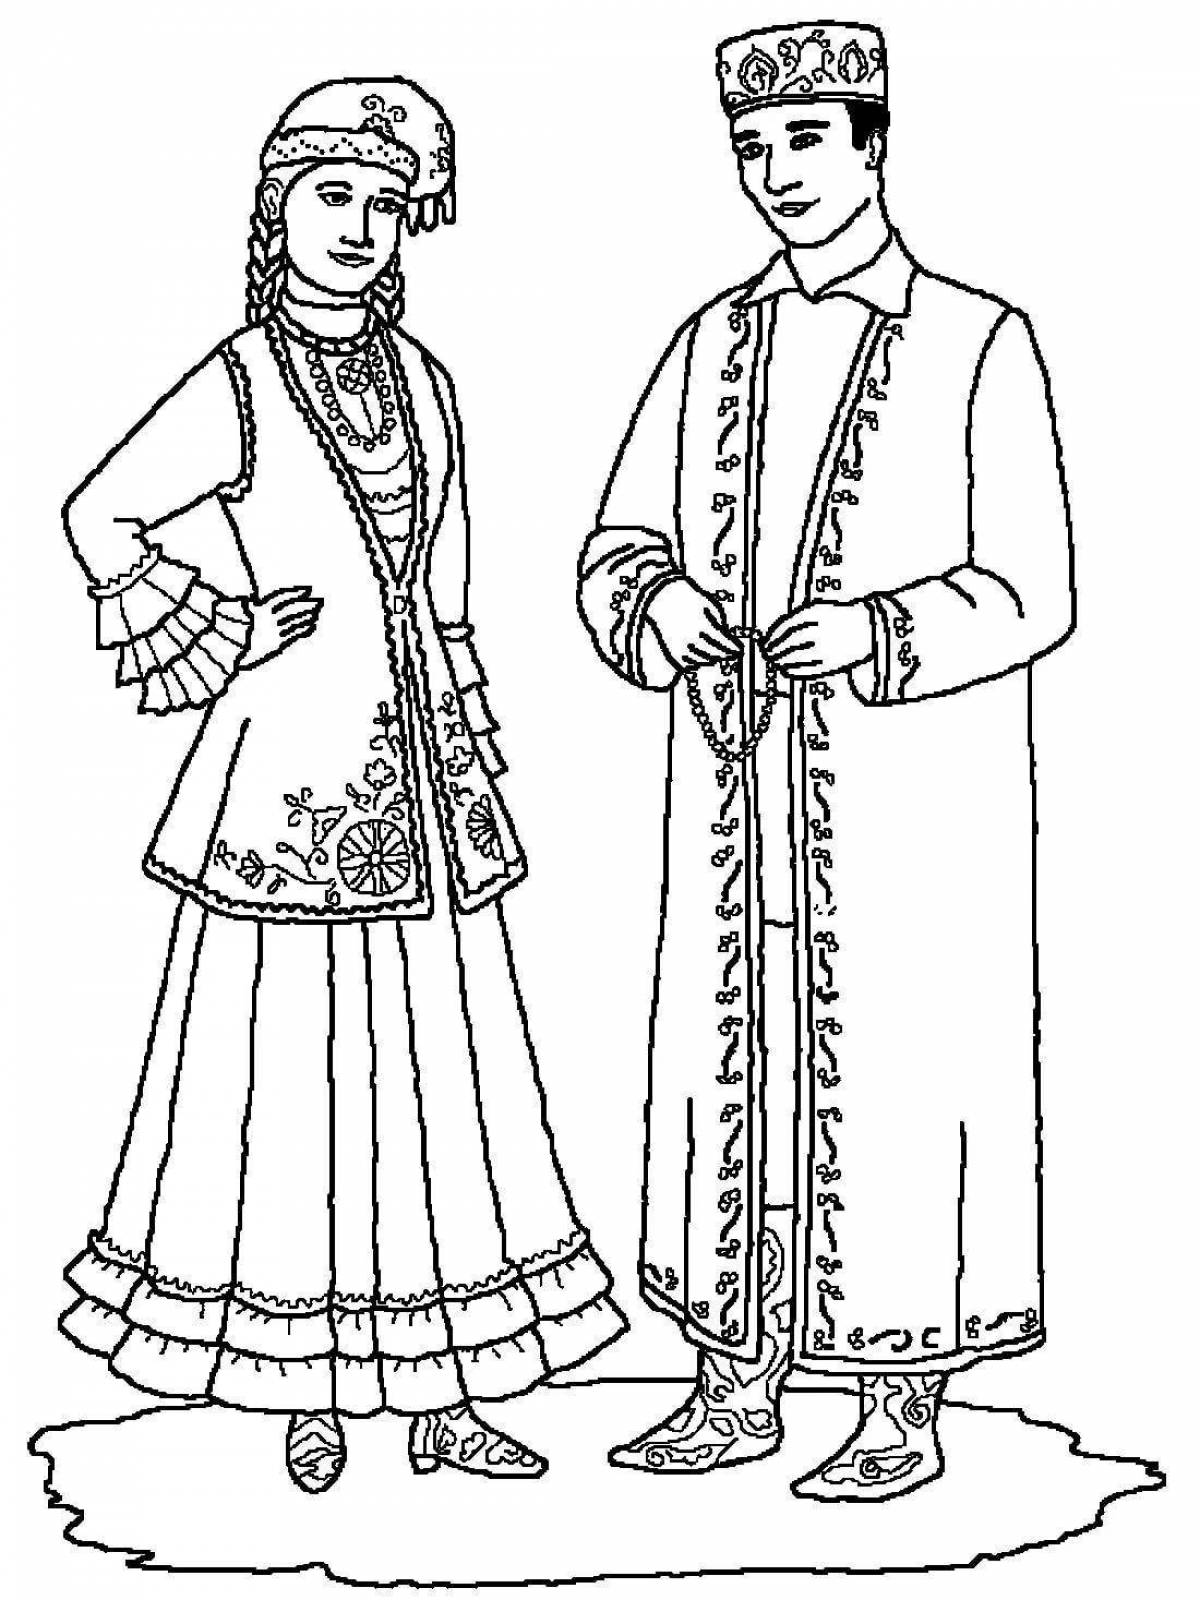 Radiant Bashkir national costume